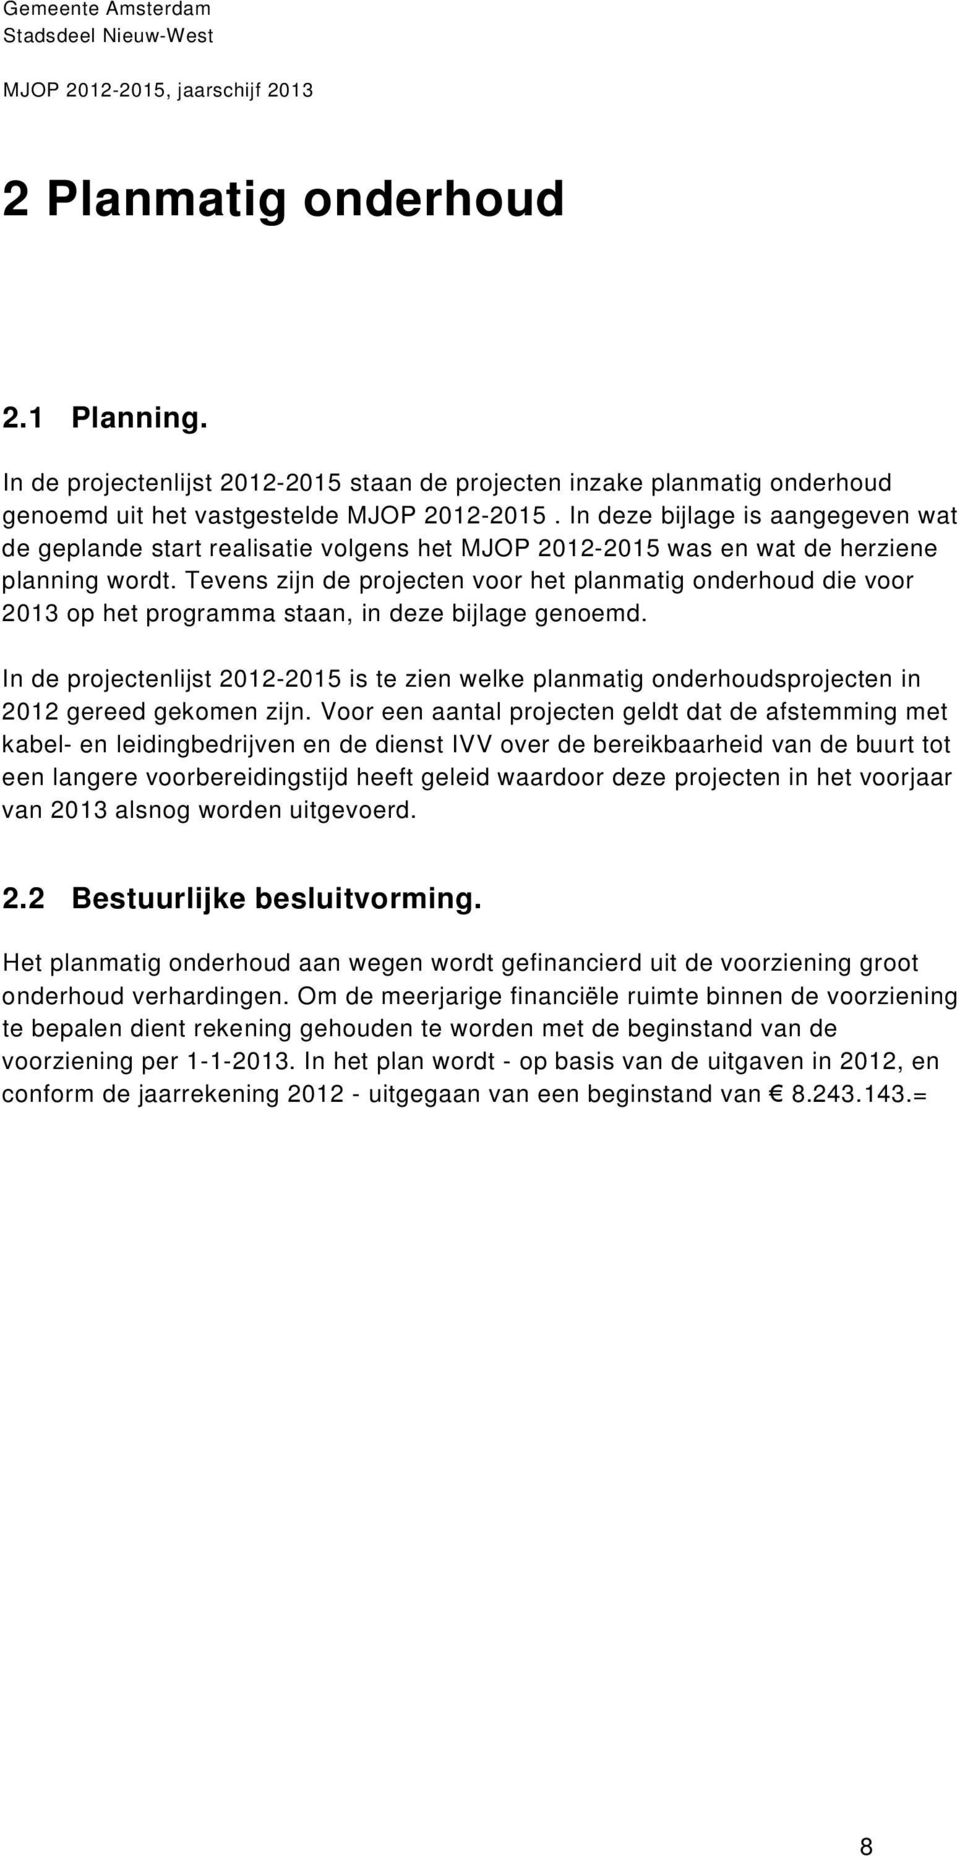 Tevens zijn de projecten voor het planmatig onderhoud die voor 2013 op het programma staan, in deze bijlage genoemd.